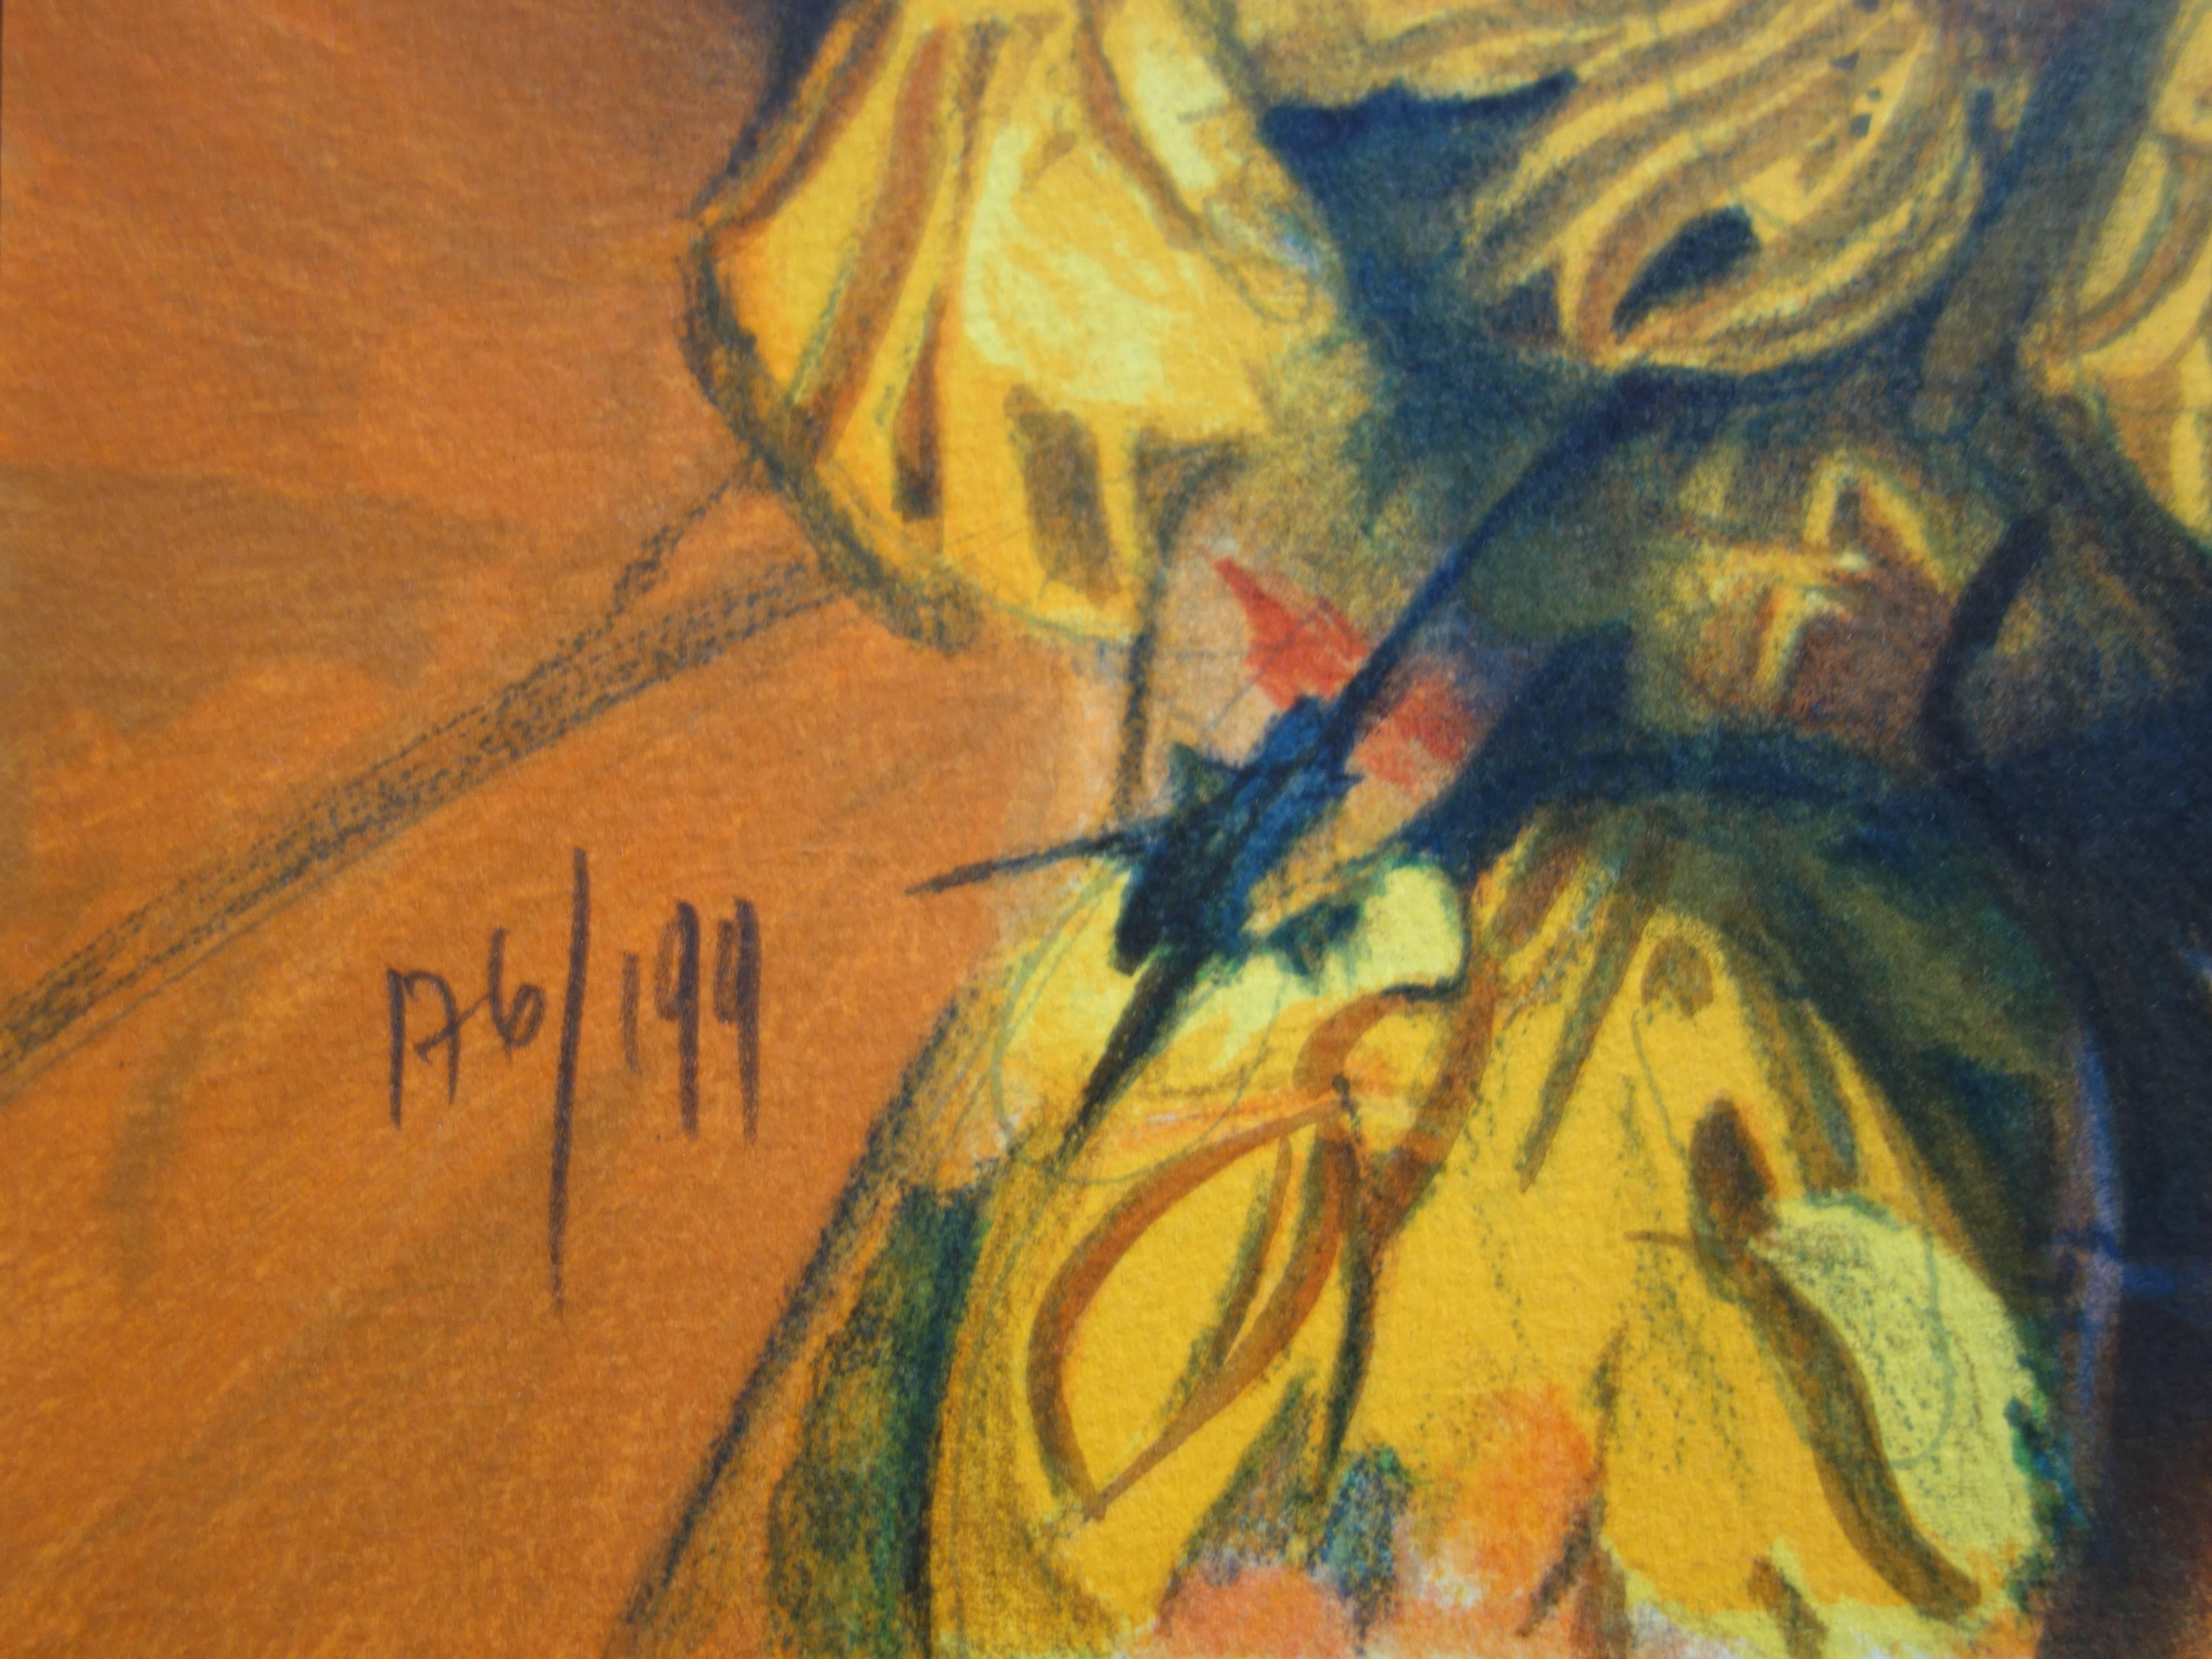 Jean-Baptiste VALADIE
Trésor : Arlequine

Lithographie originale
Signé à la main au crayon
Limité /199 exemplaires
Sur vellum 71 x 55 cm (c. 28 x 22 in)

Excellent état